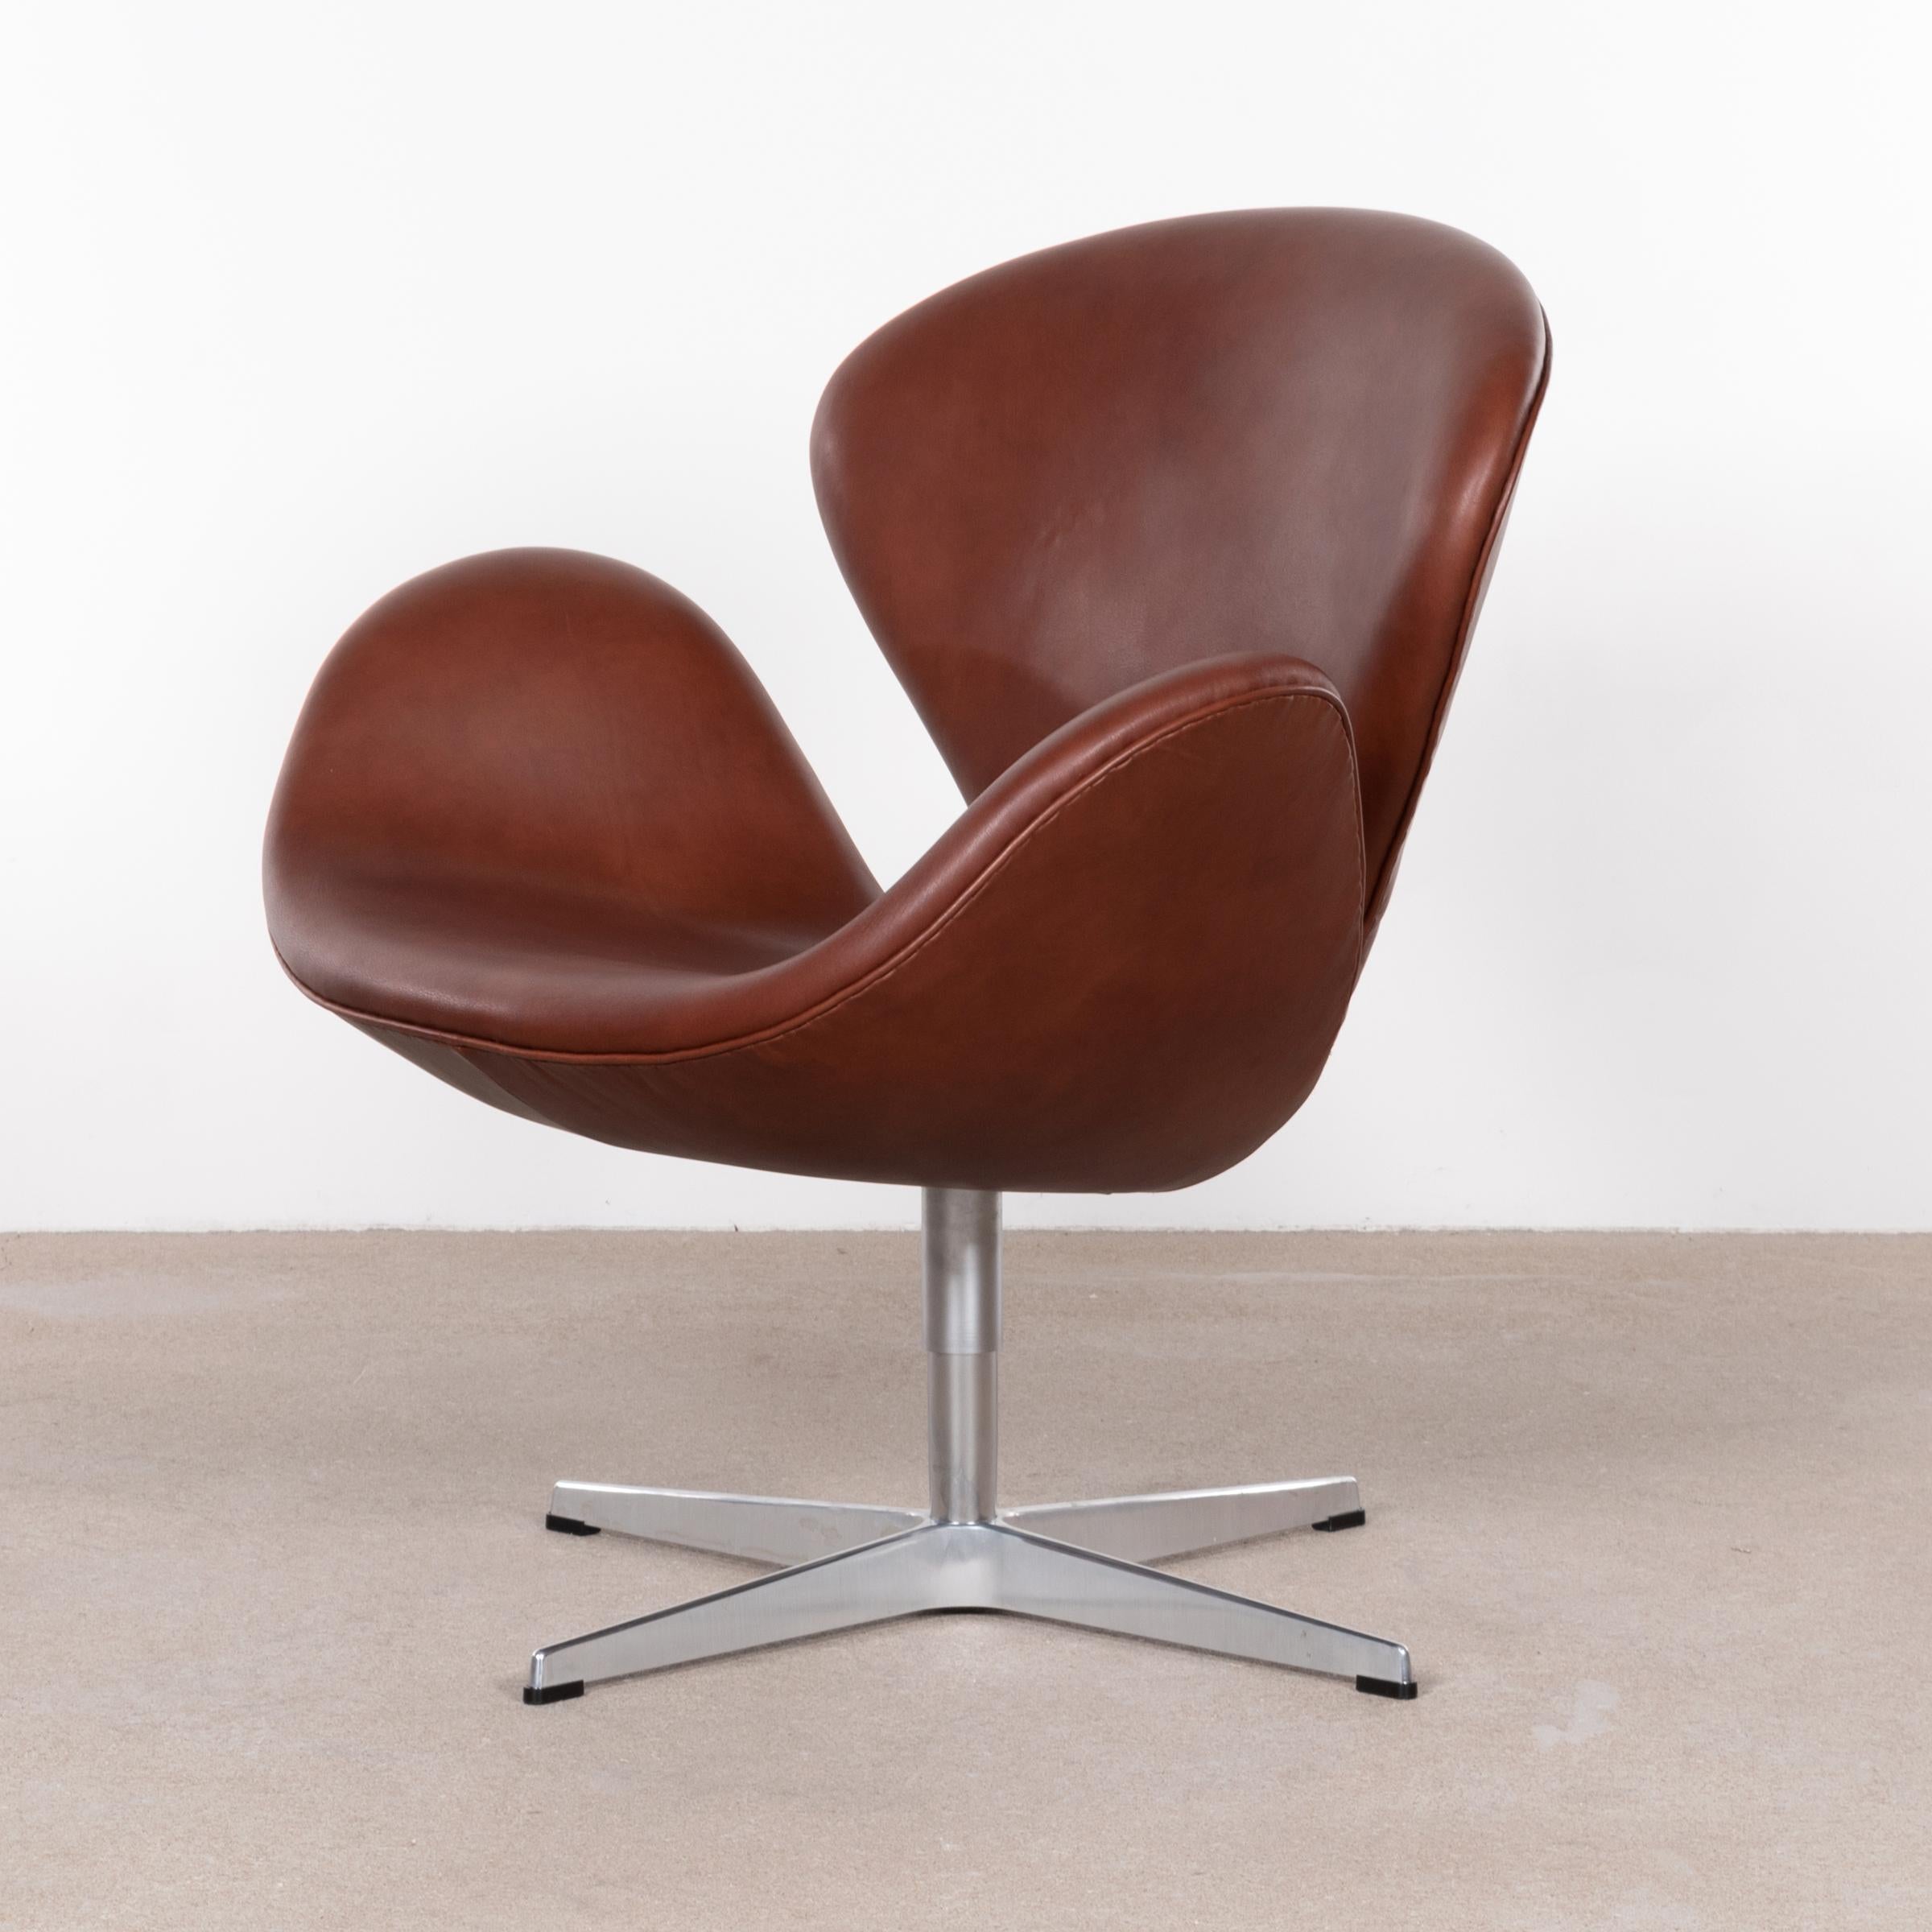 Arne Jacobsen Swan Chair 'Model 3320' in Brown Leather for Fritz Hansen Denmark 2